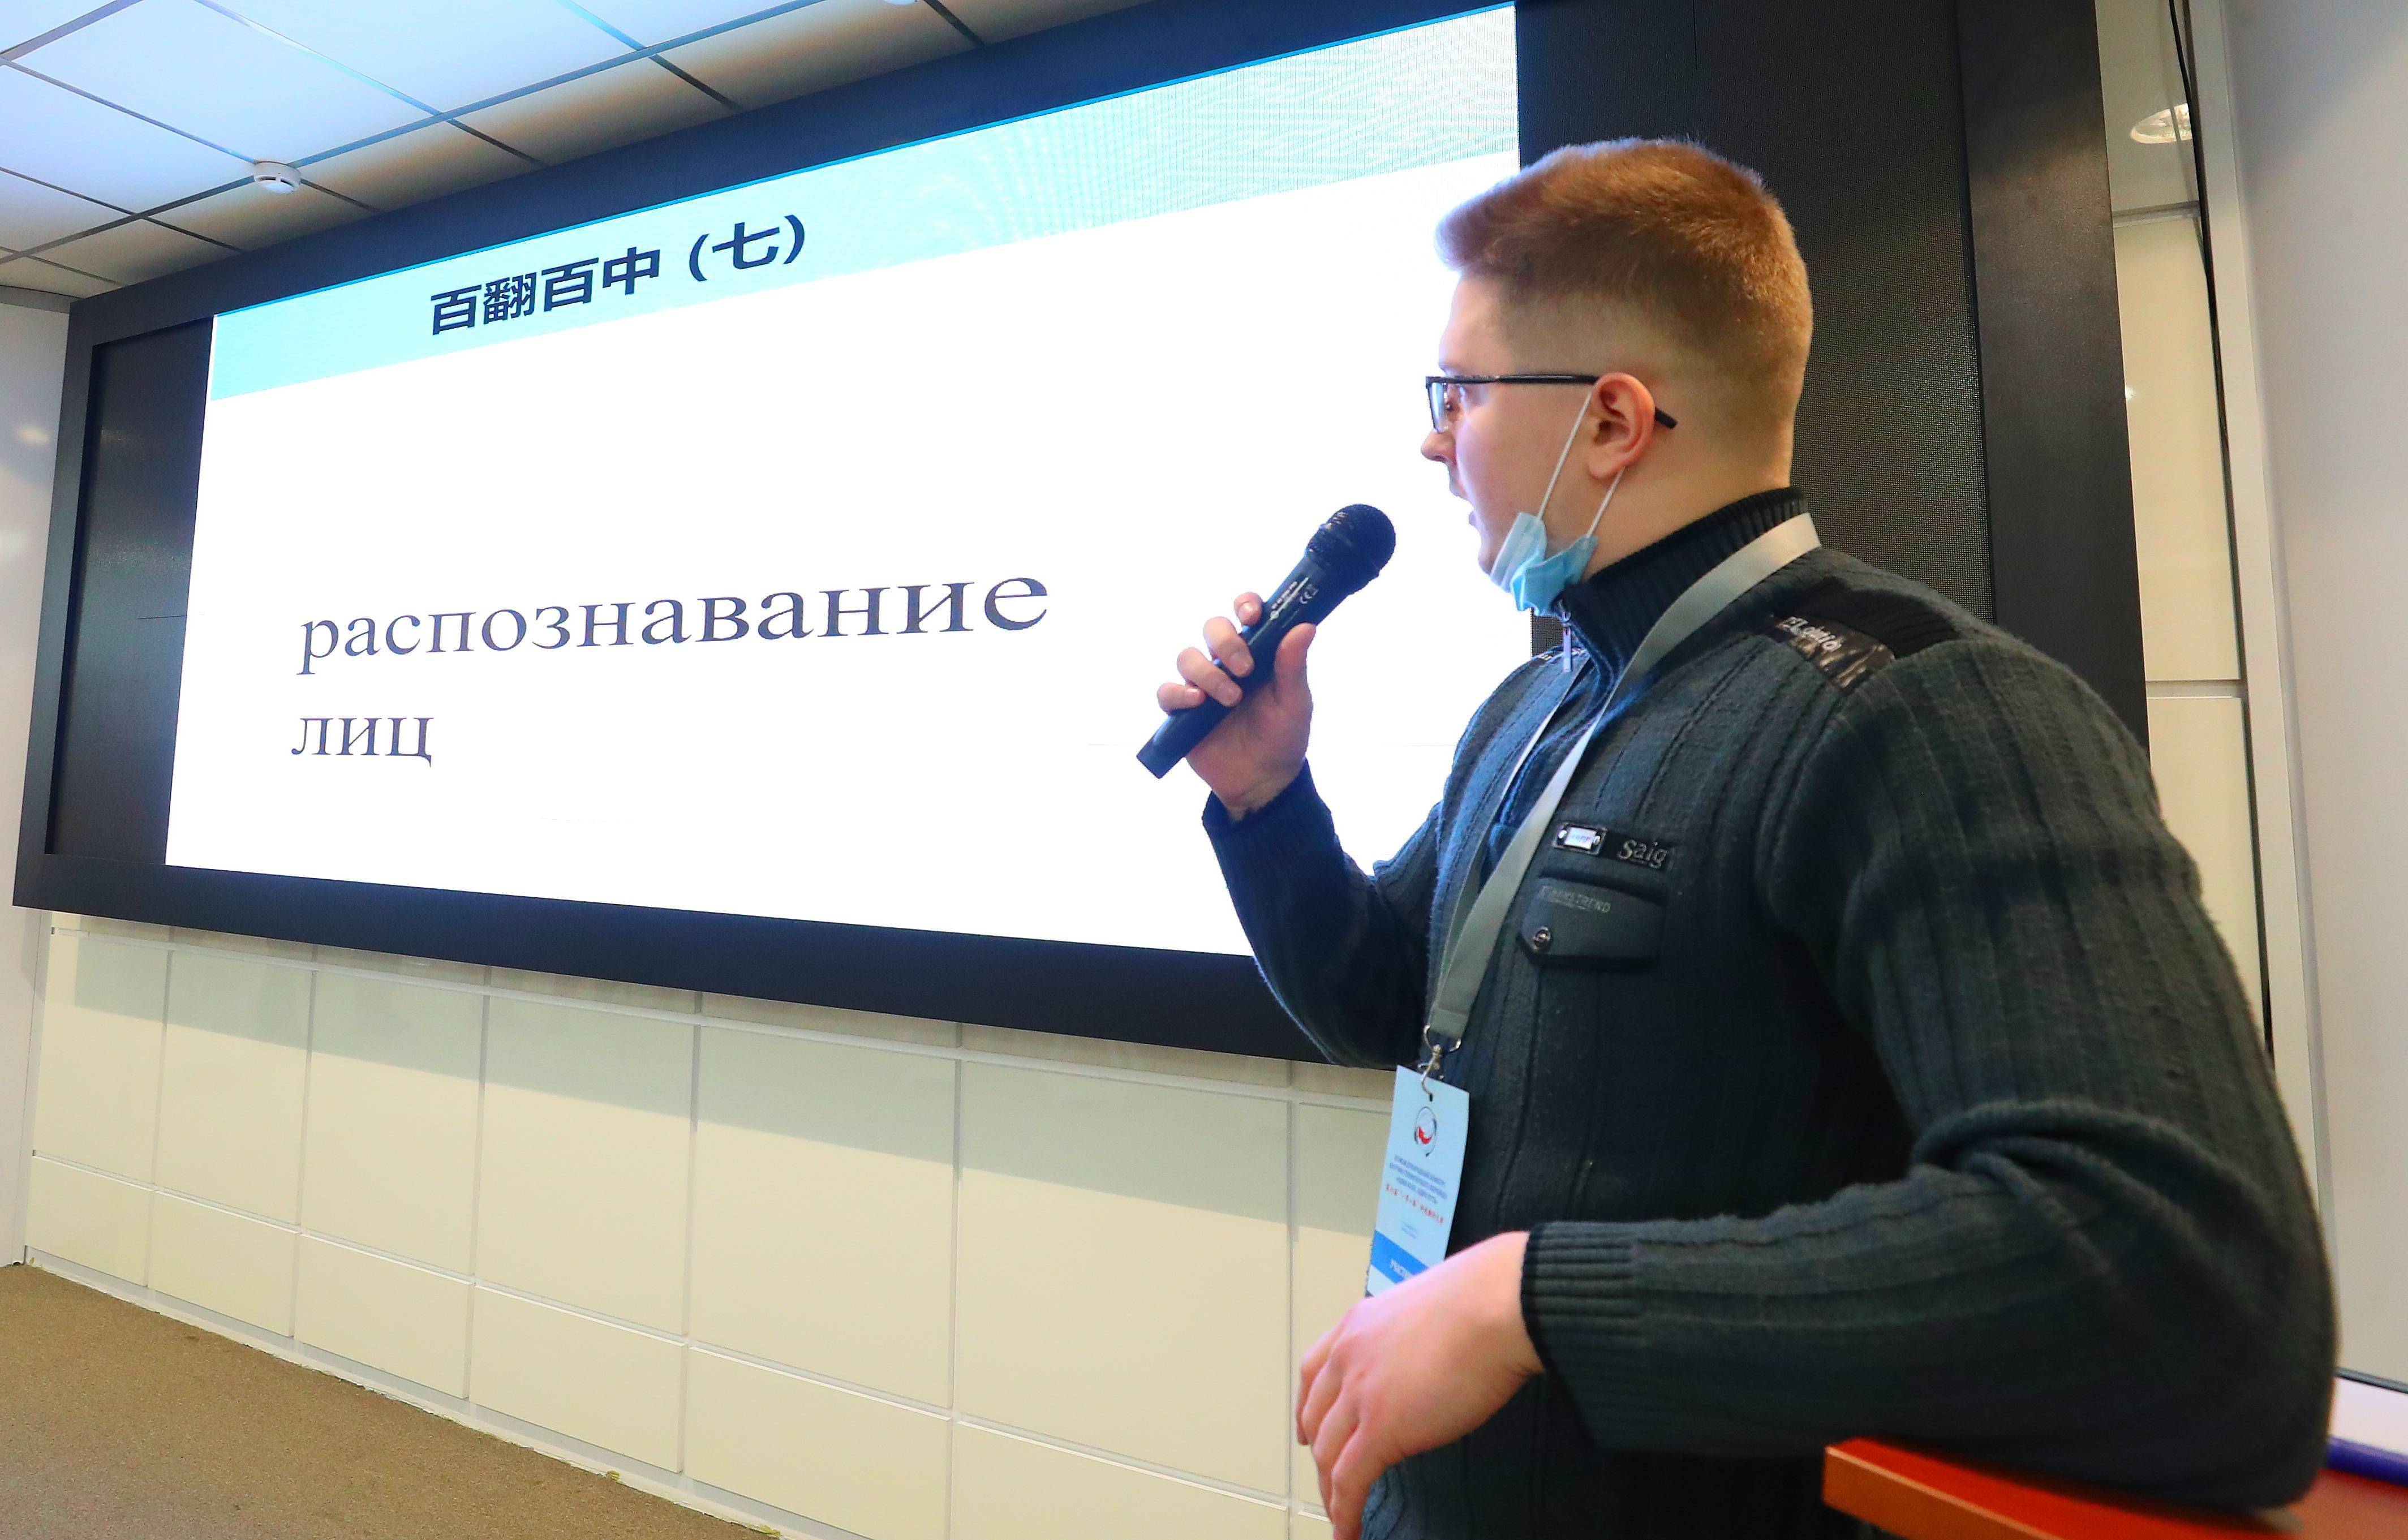 任科夫|第六届国际汉俄科技翻译大赛在白俄罗斯举行